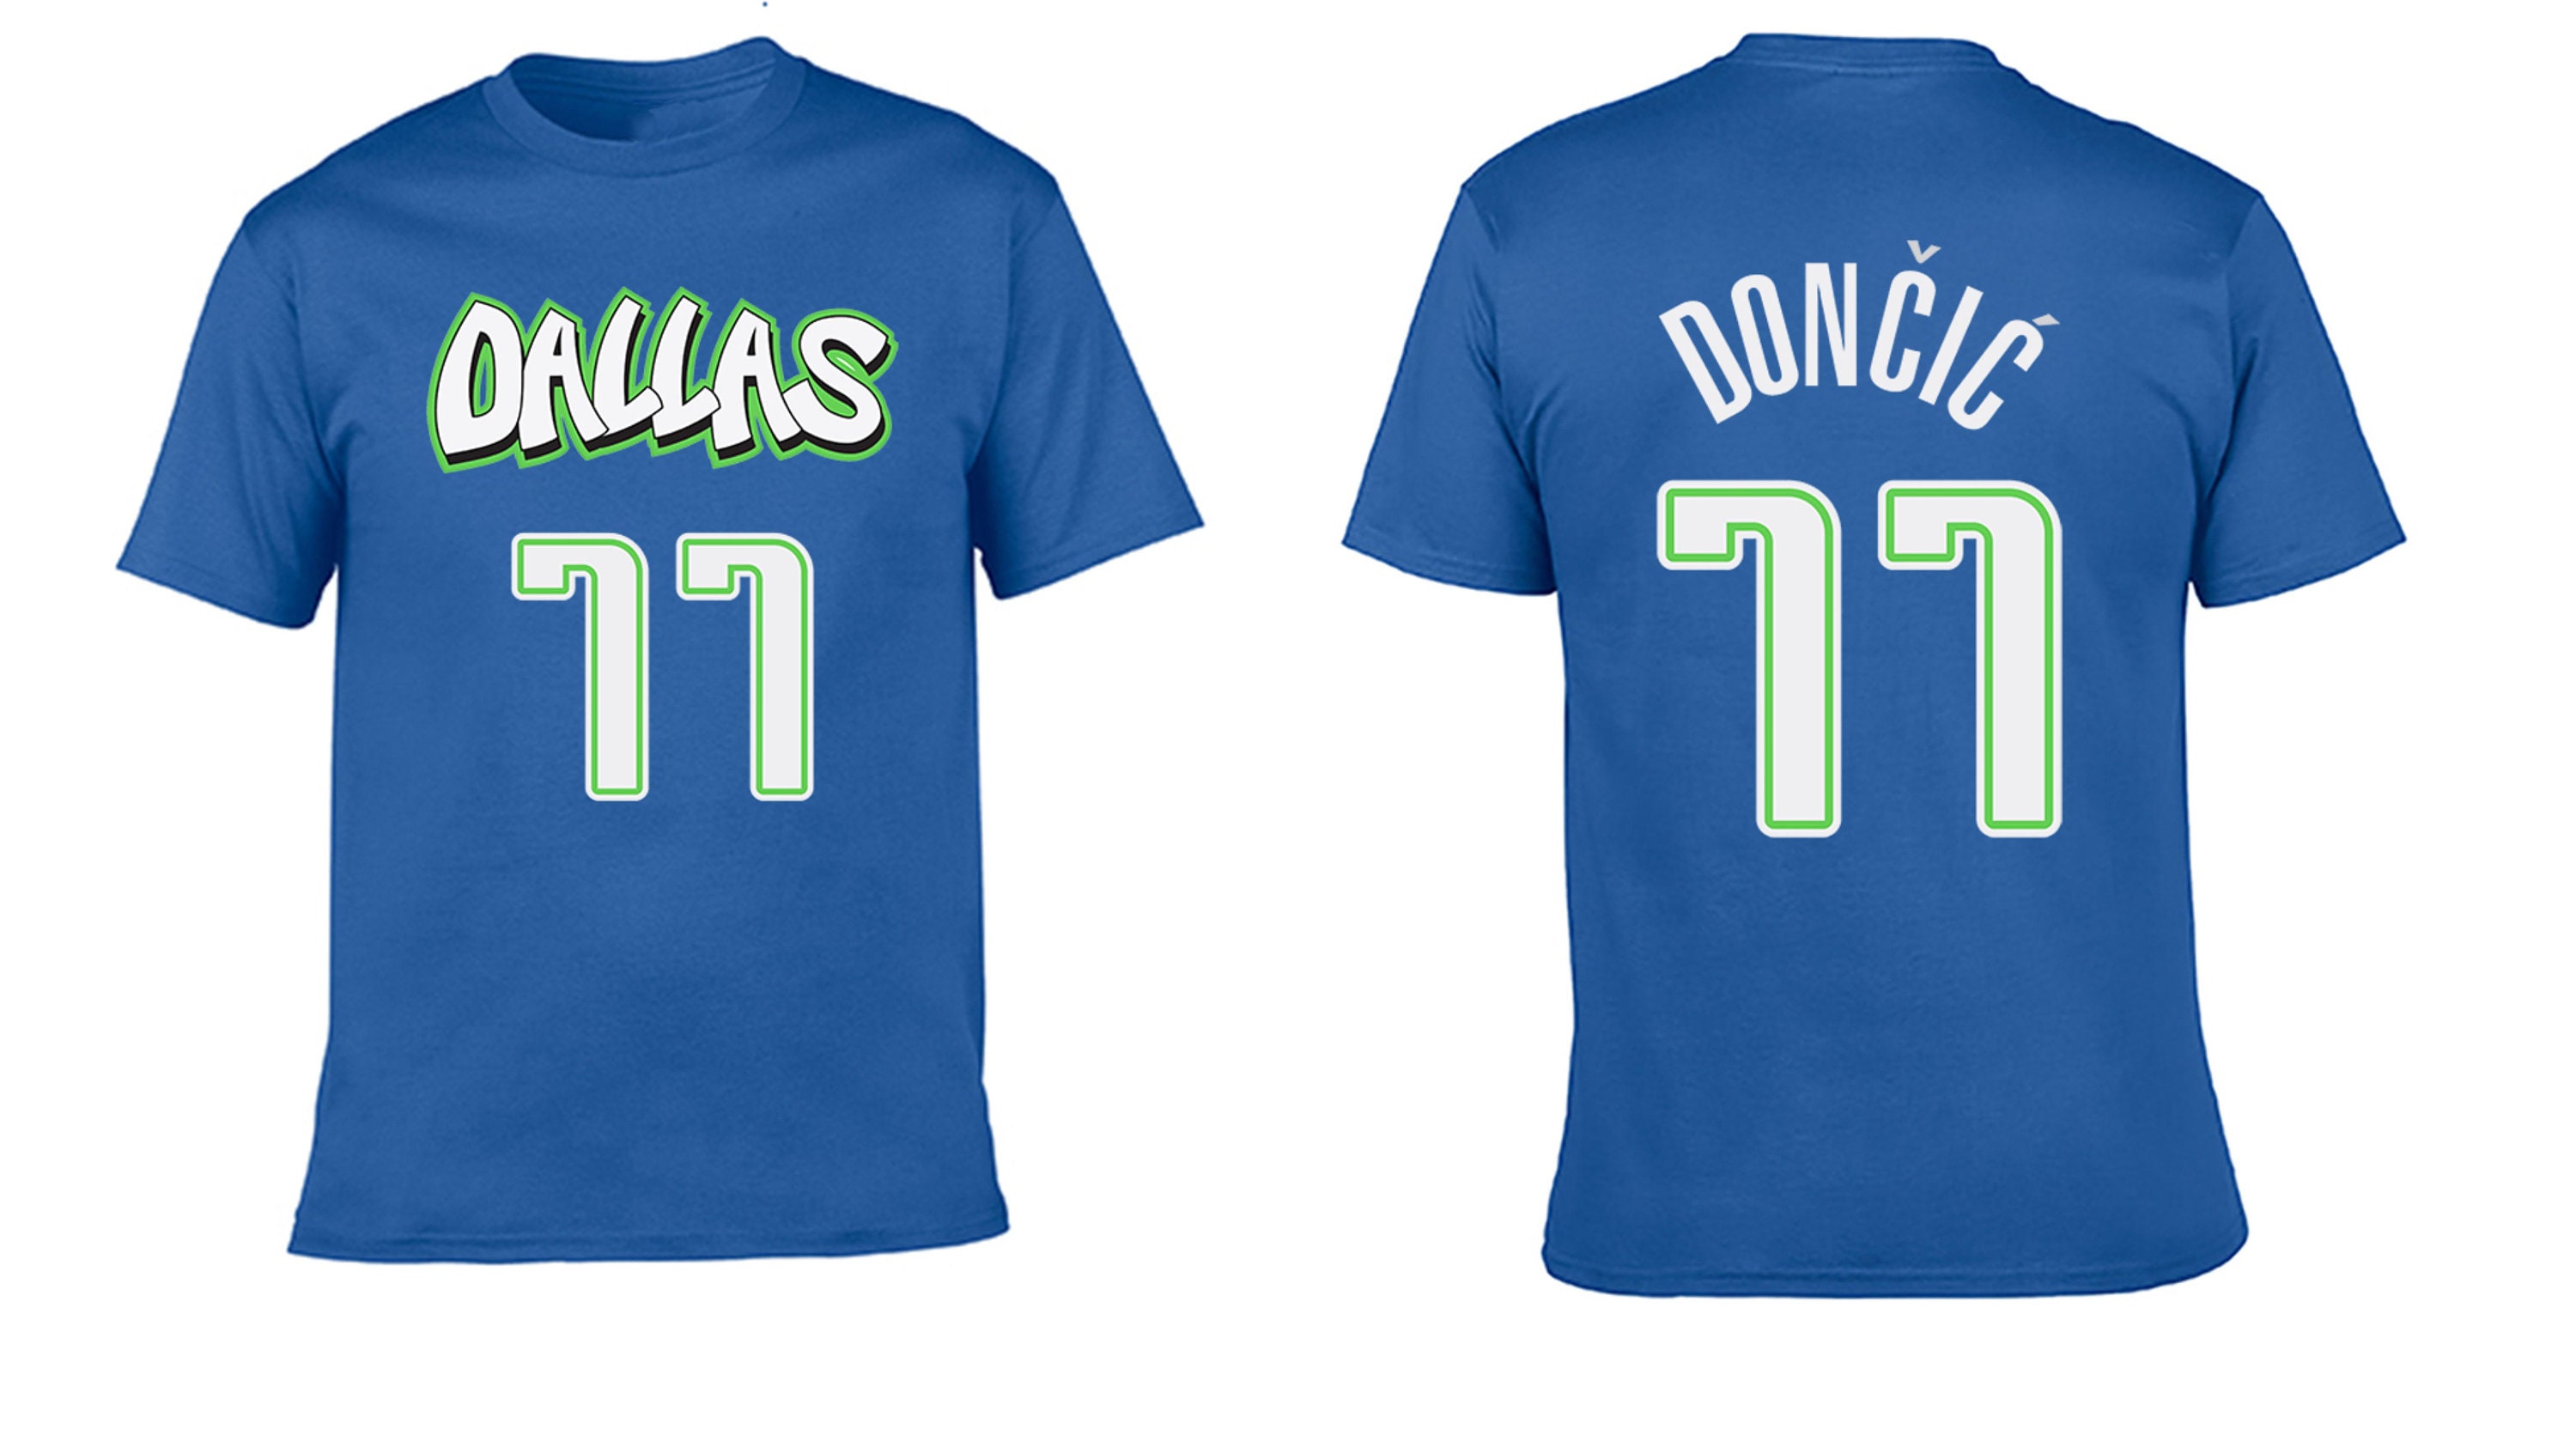 Dallas Mavericks #77 Luka Doncic Black And Blue Stitched NBA Jersey